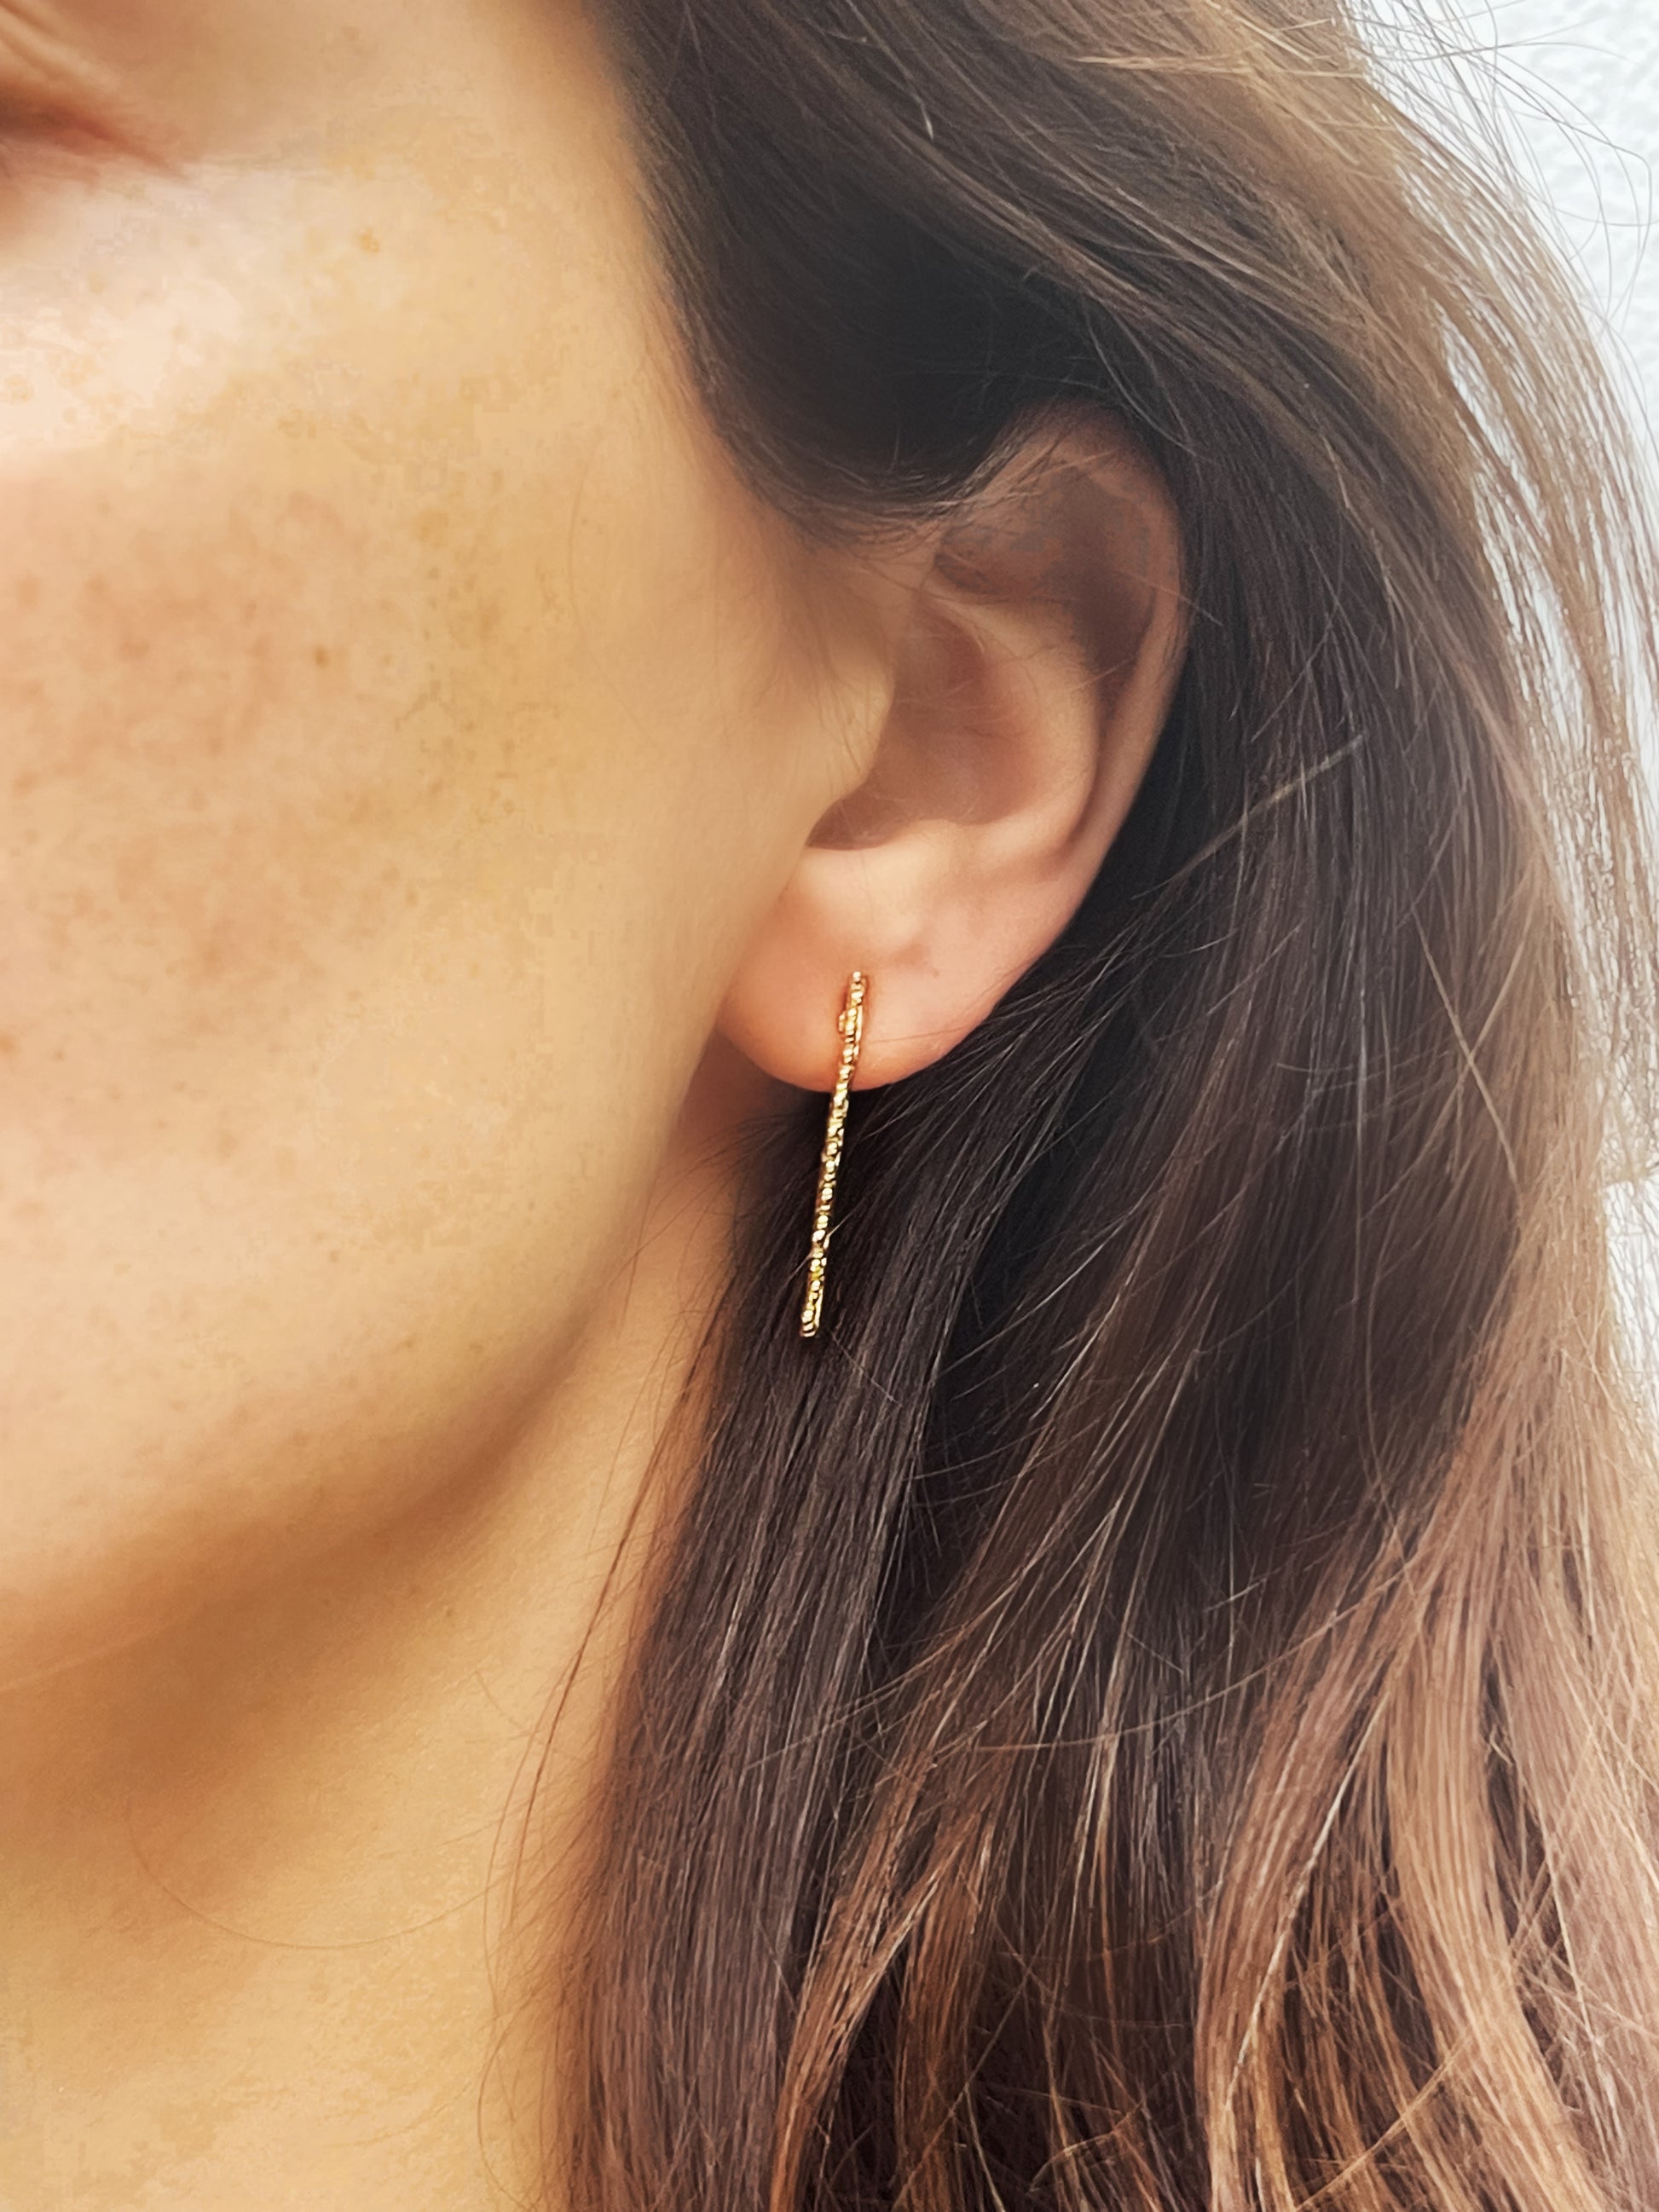 Heavenly bubbles earrings in gold by NORIDU